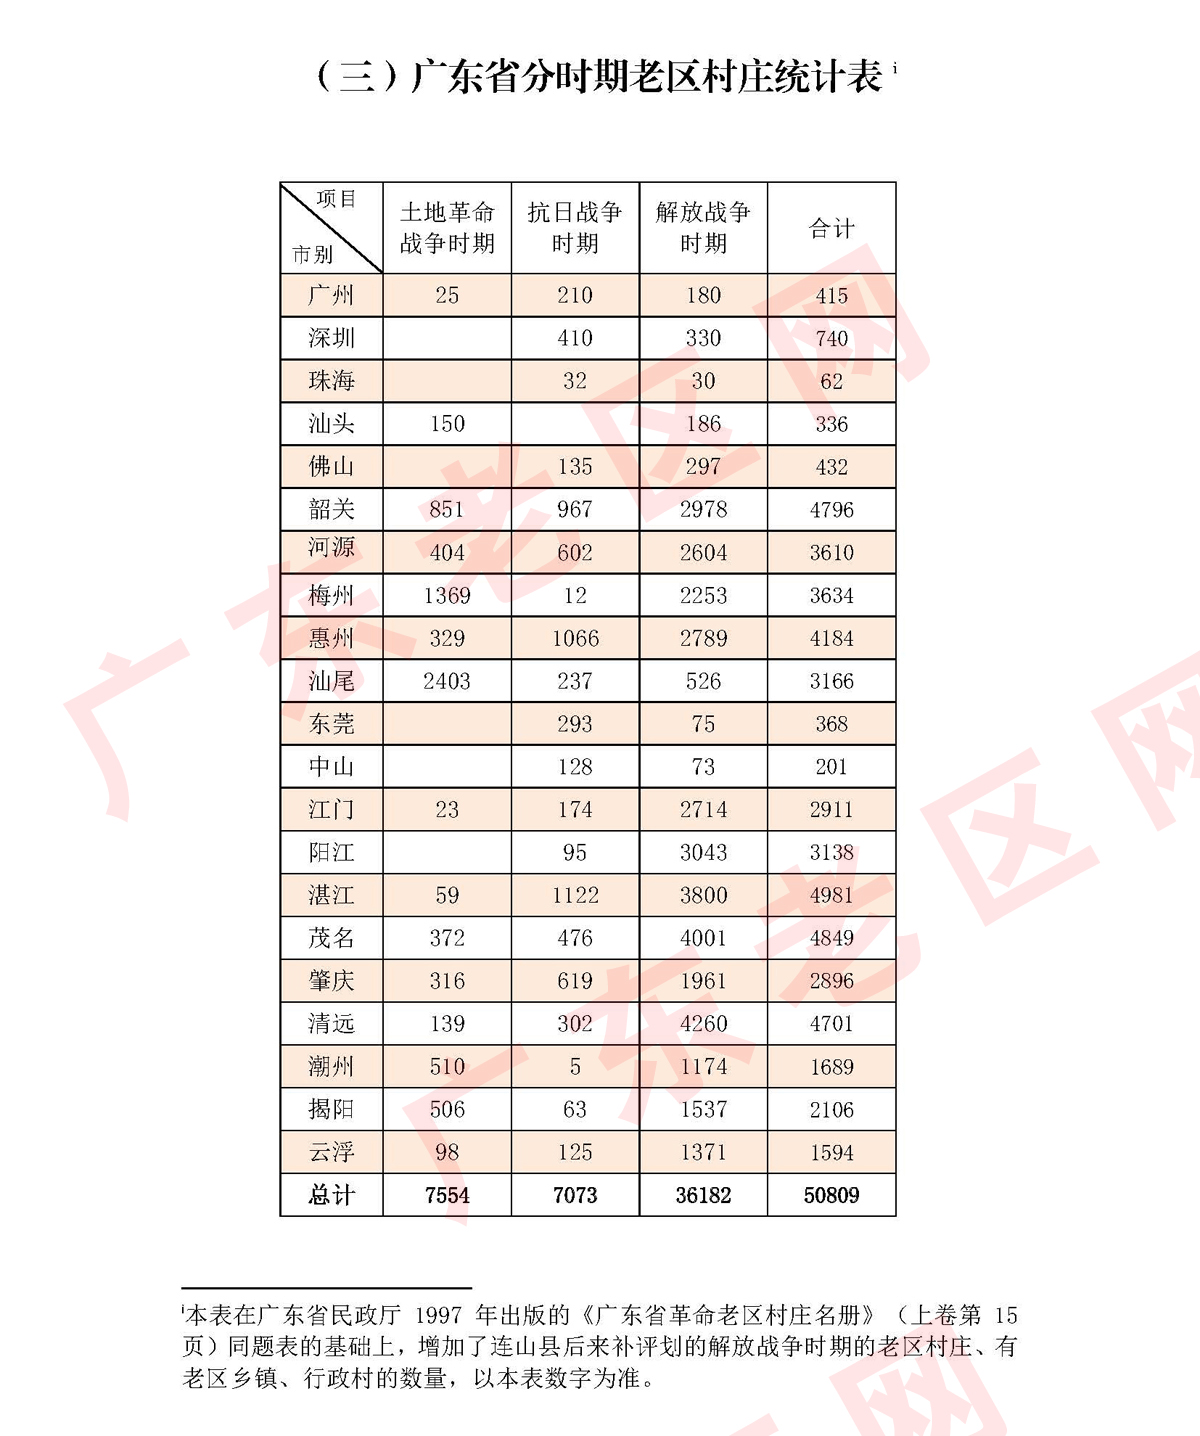 3  广东省分时期老区村庄统计表 220328副本.jpg